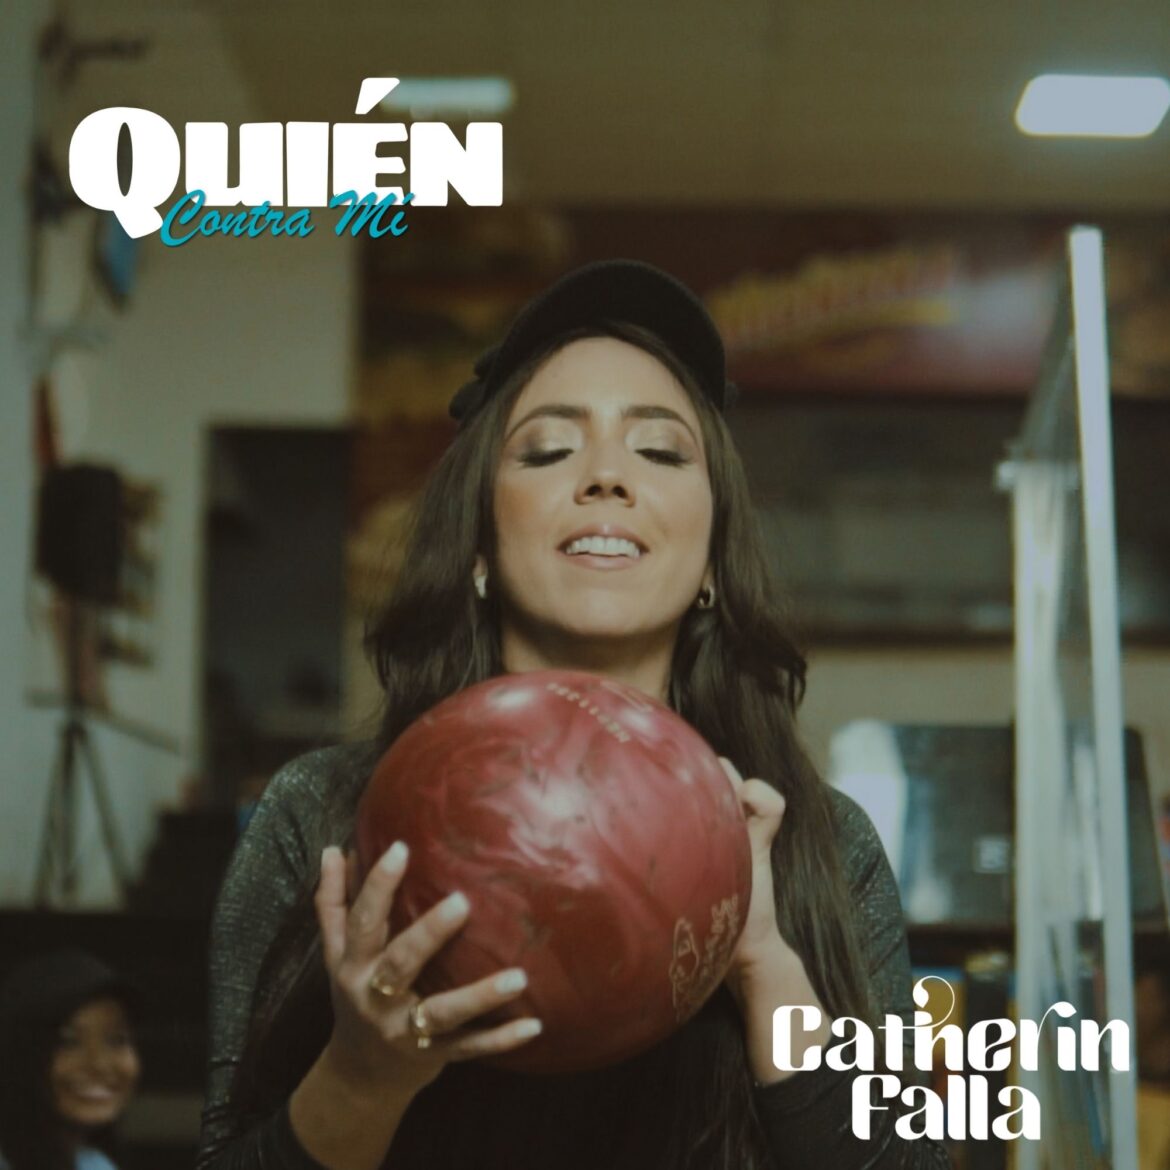 La cantante colombiana Catherin Falla presentó a nivel internacional el video oficial de su canción “Quién Contra Mí”